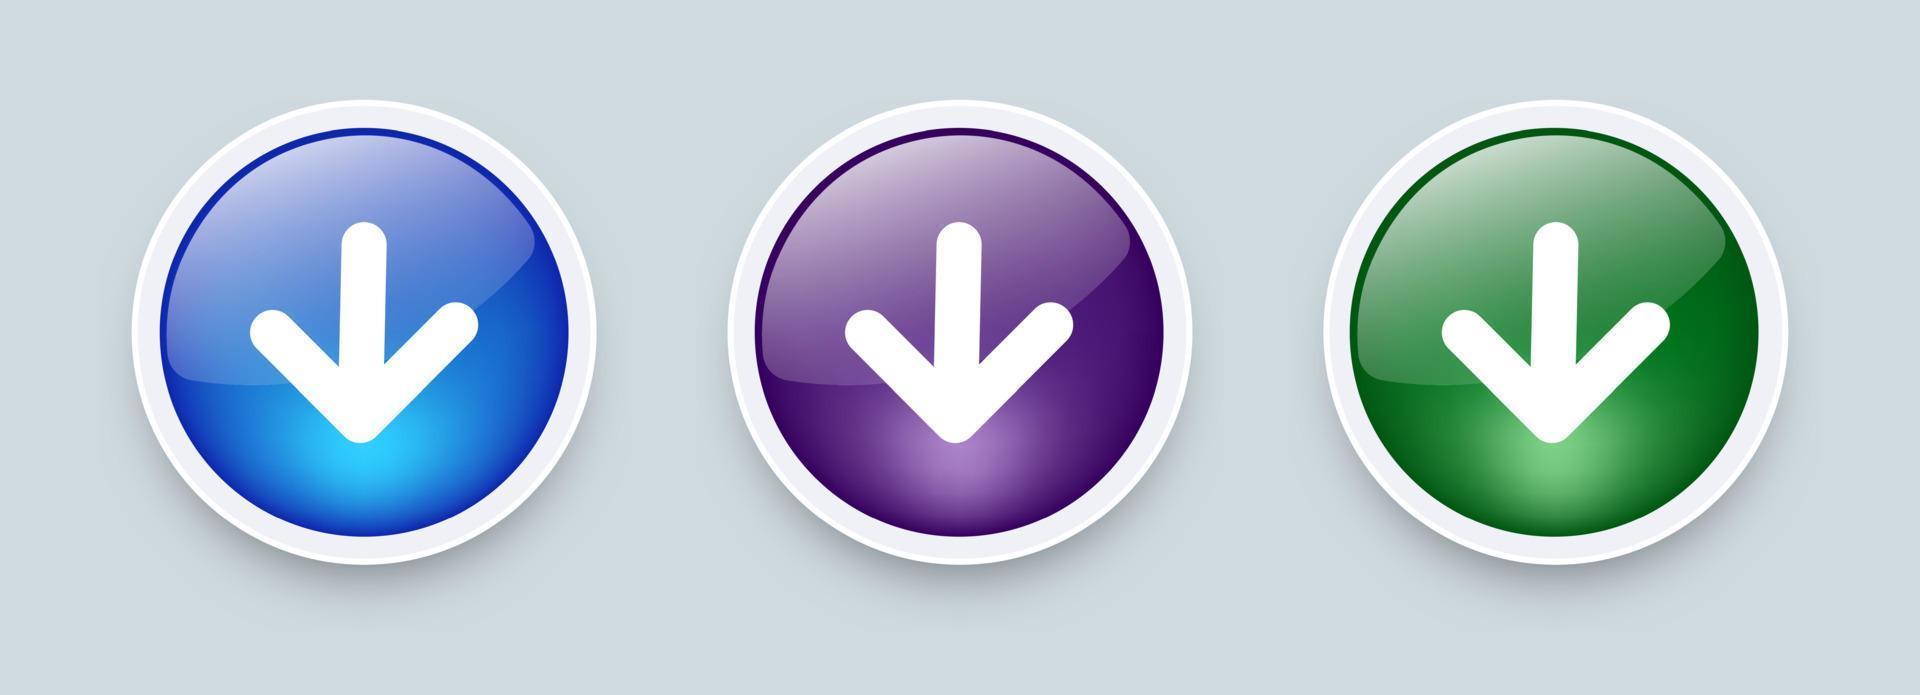 conjunto de botones de descarga. colección de iconos de descarga de software. vector